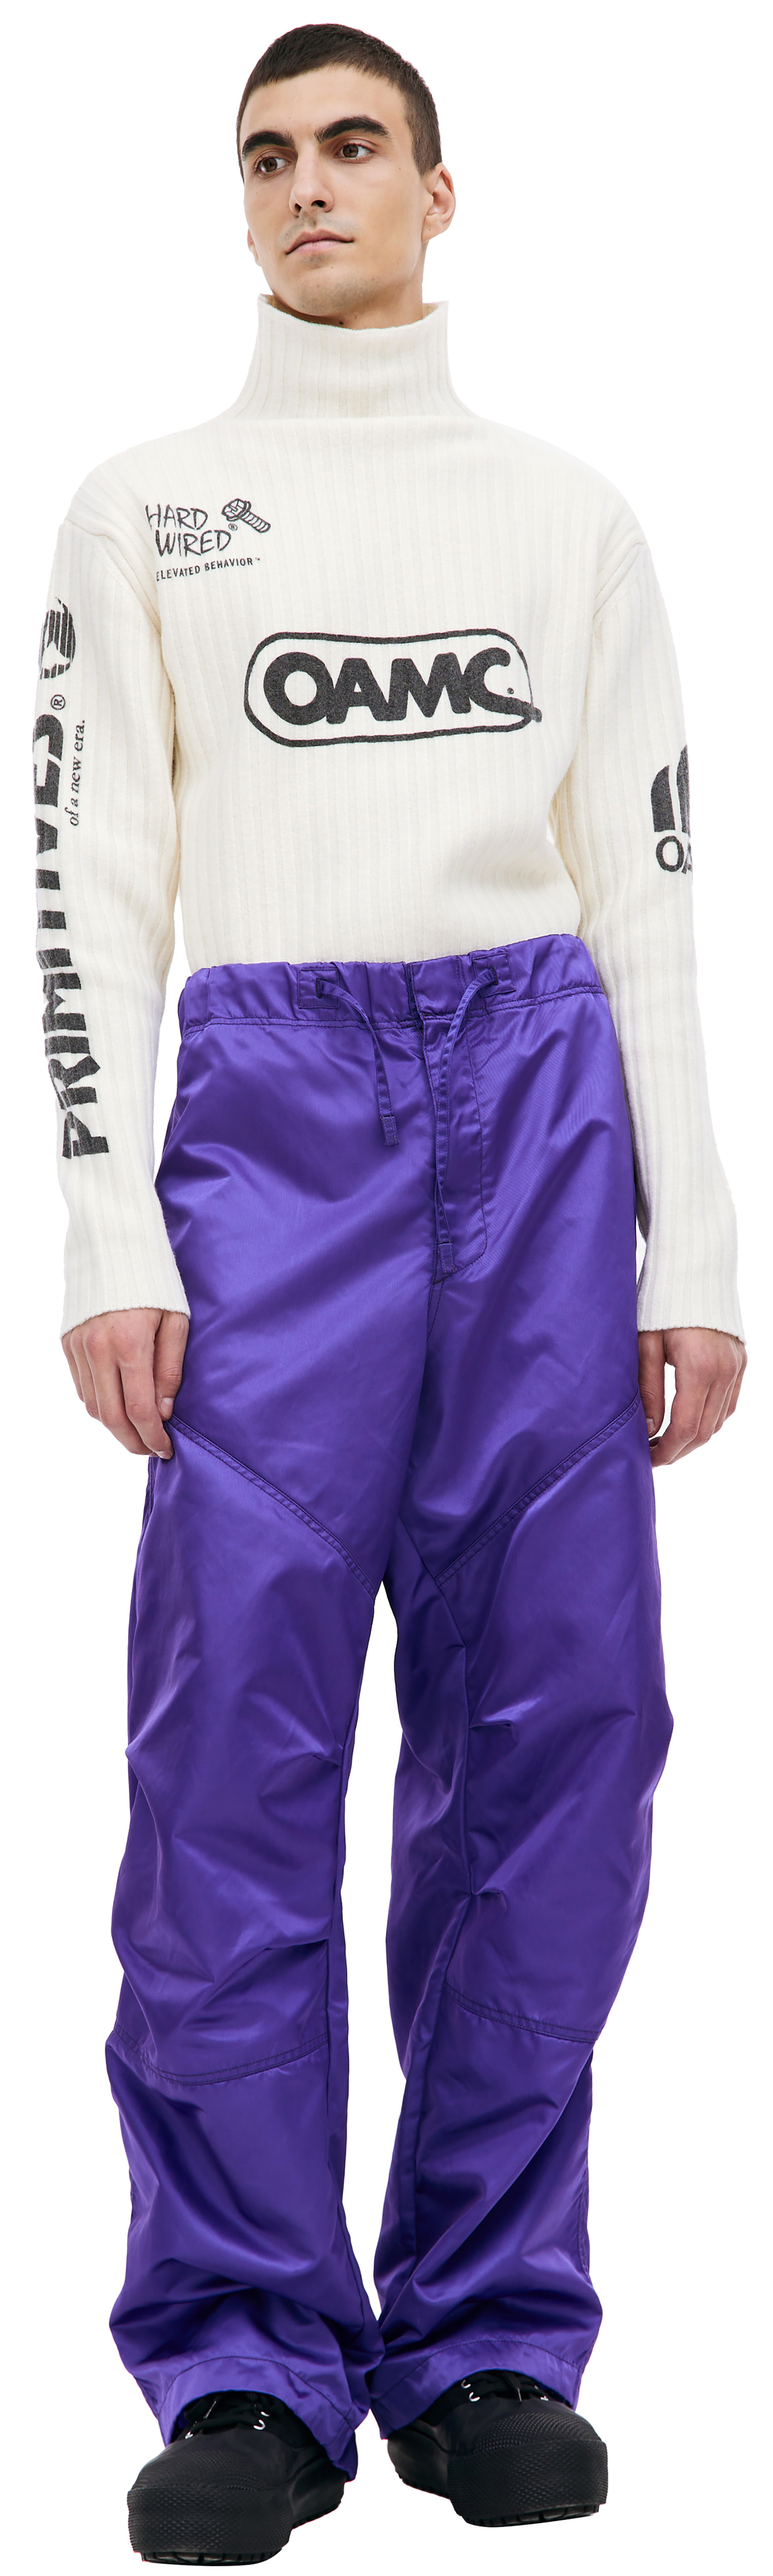 OAMC Purple wide leg trousers